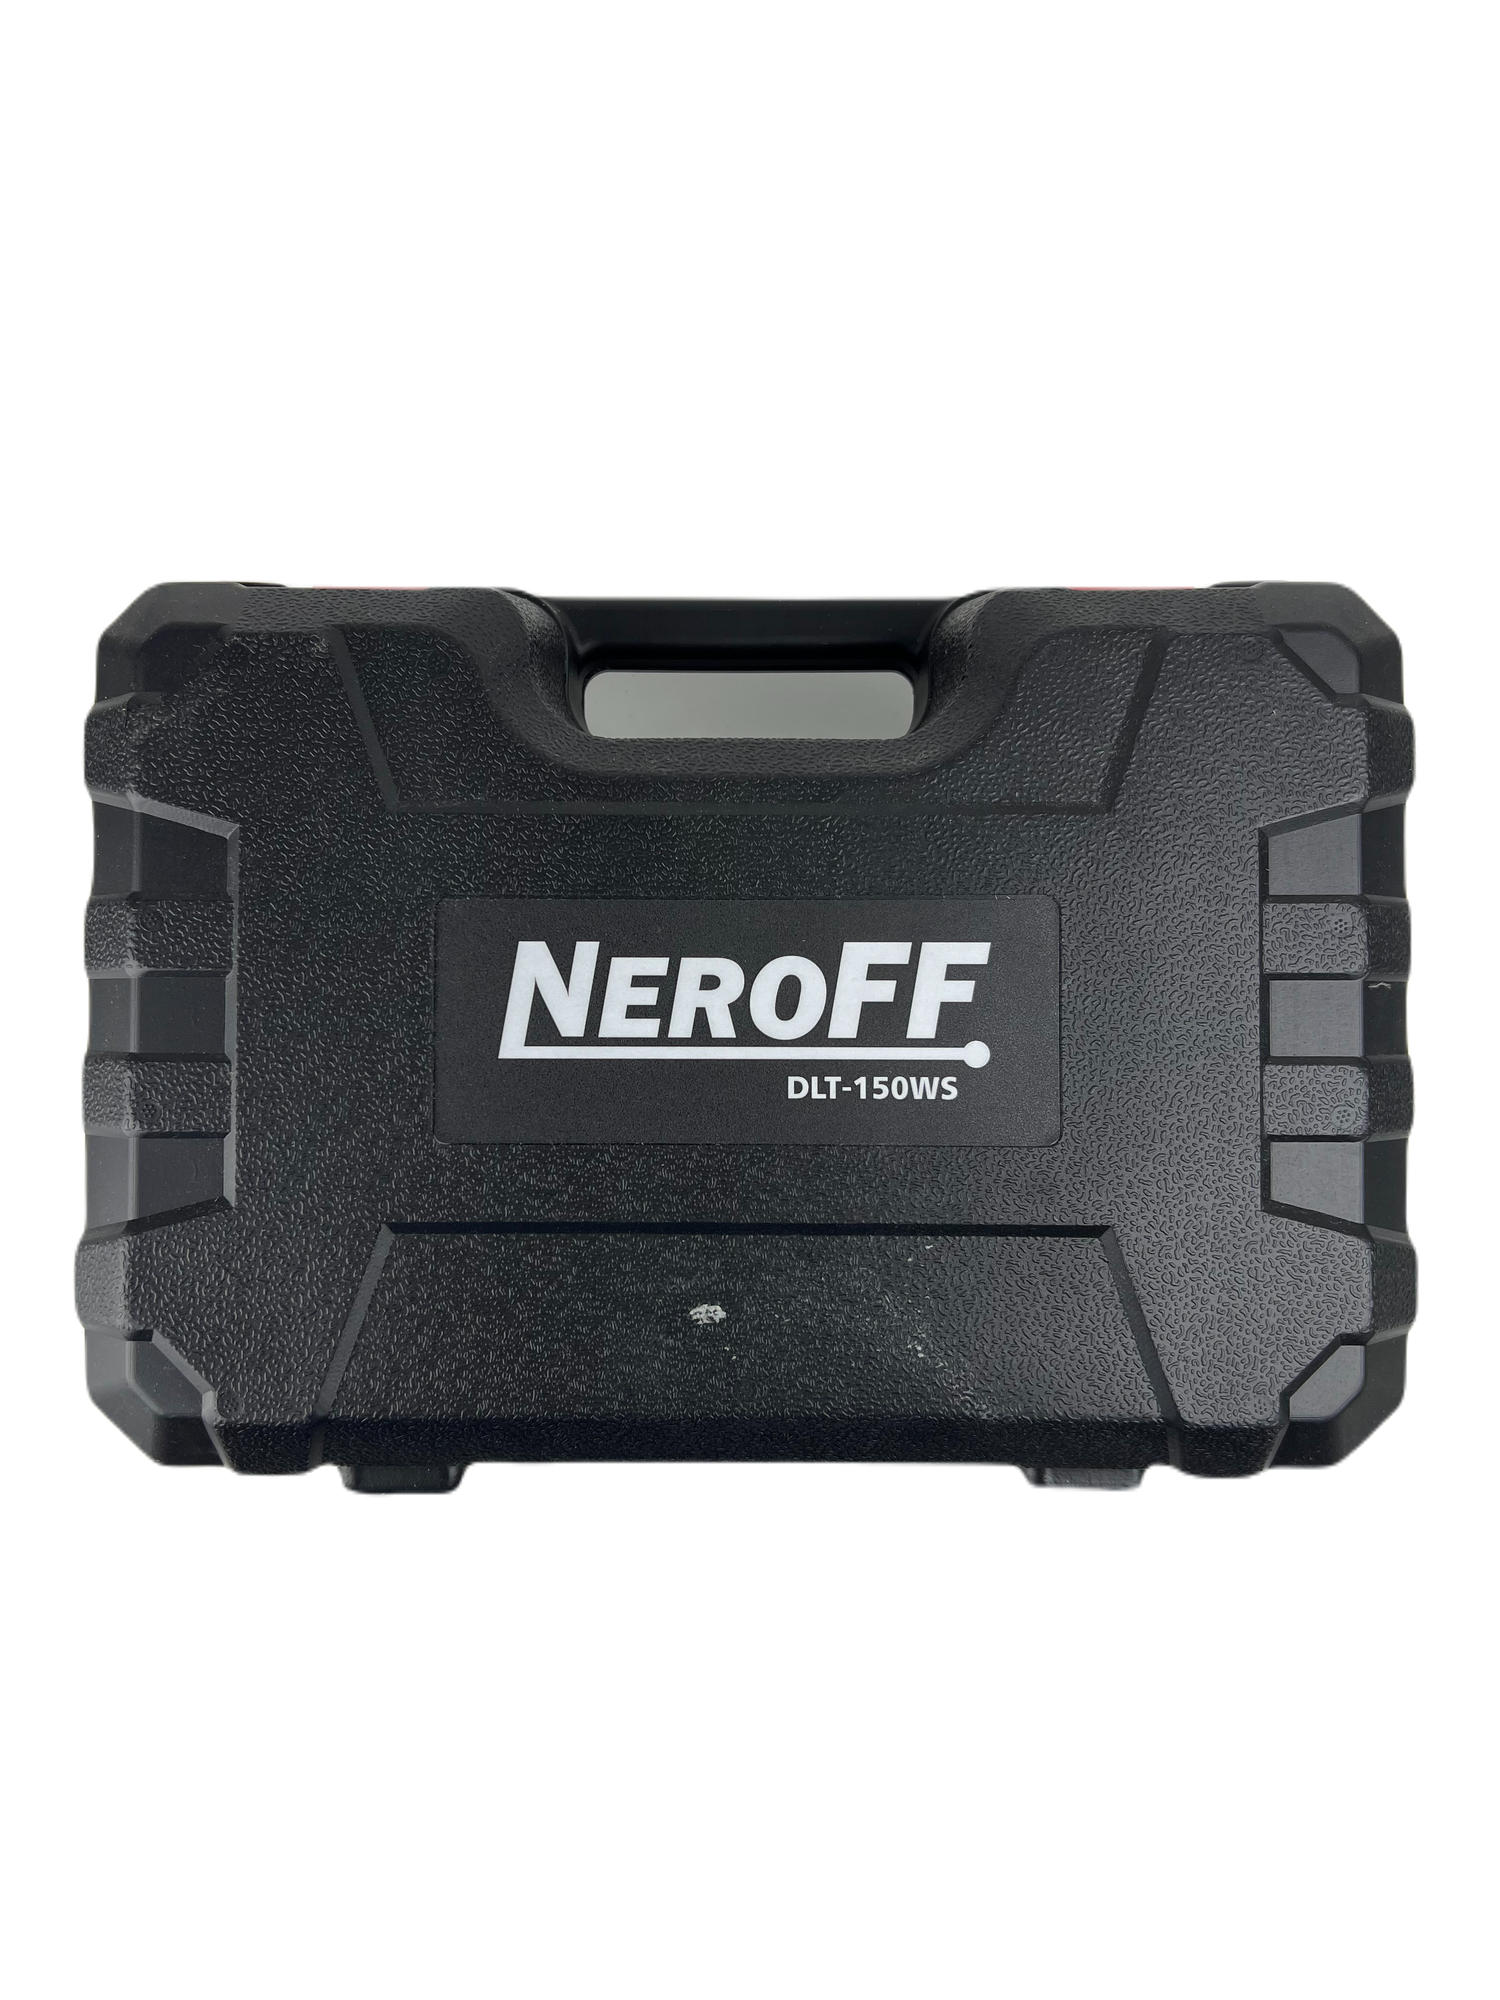 Виброприсоска для укладки плитки аккумуляторная NeroFF DLT-150WS 21V (6 режимов мощности 0-23000)